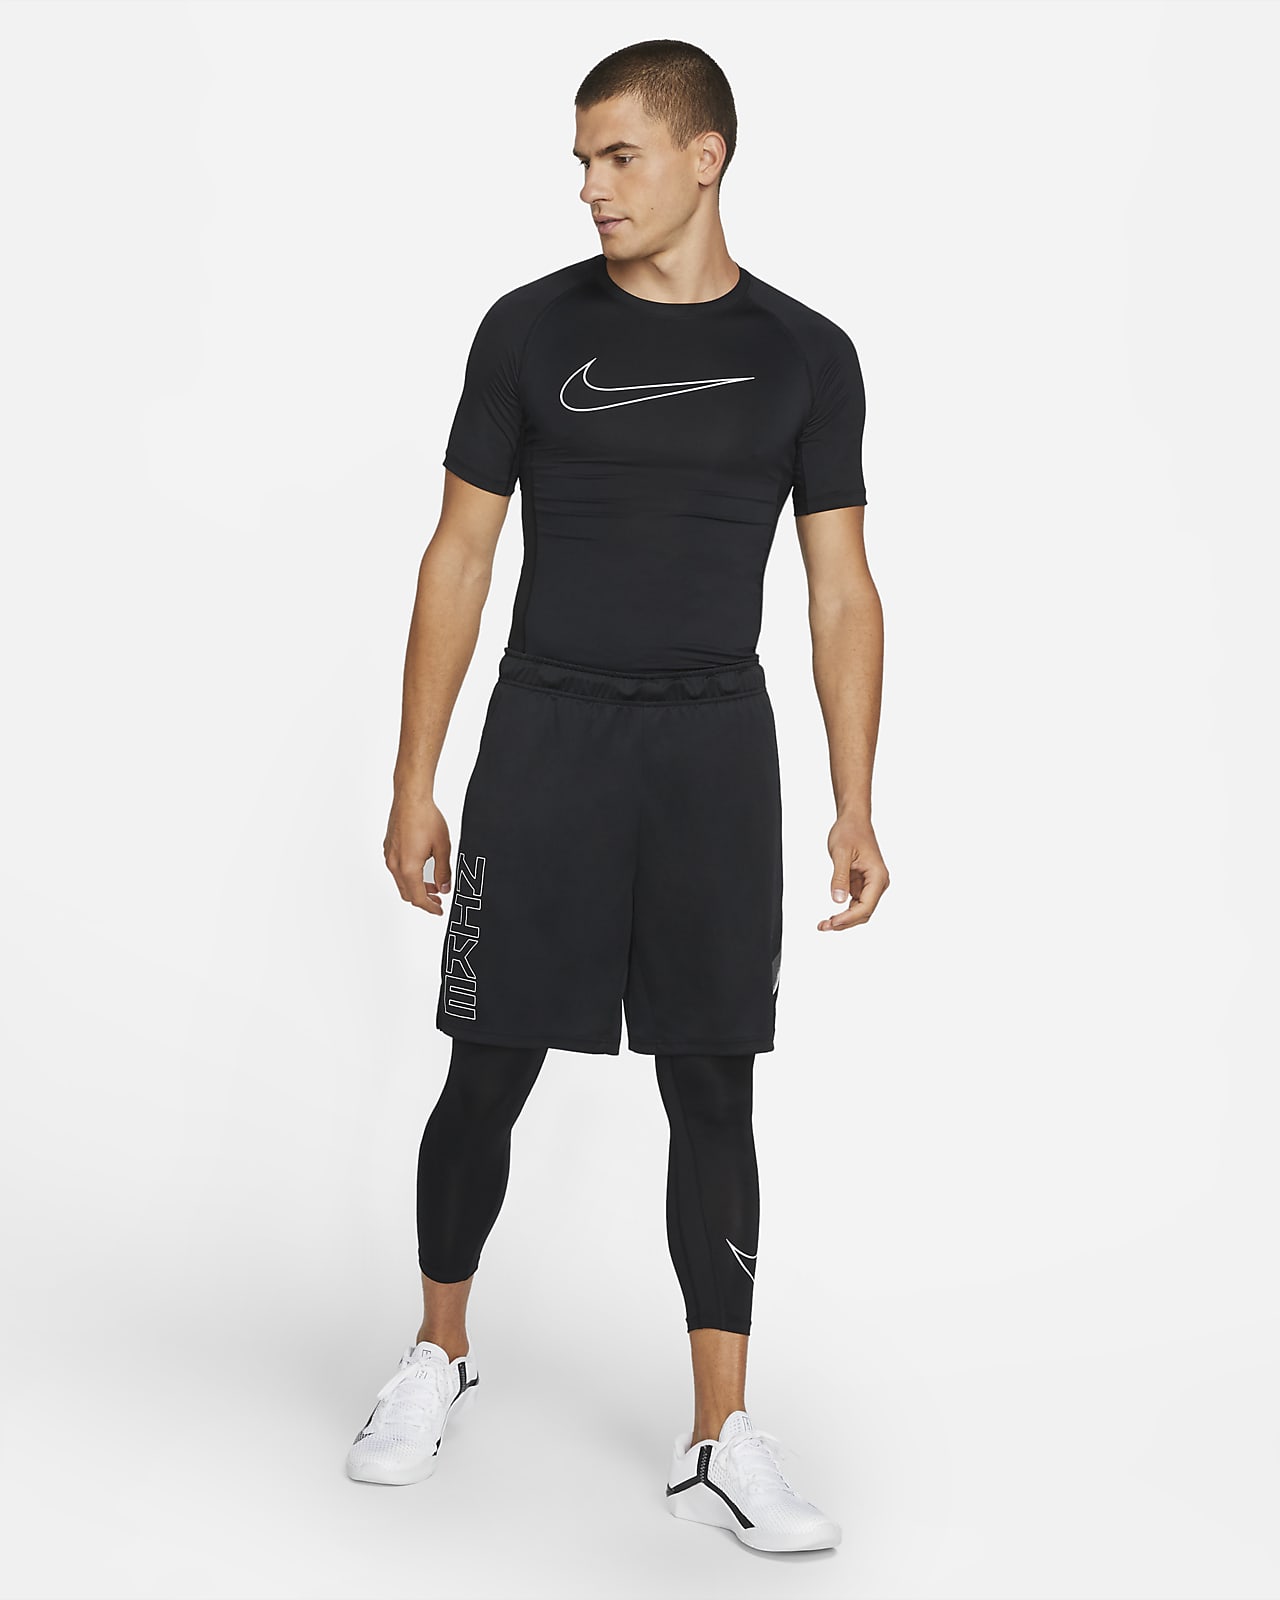 Cría Pautas Medicinal Nike Pro Dri-FIT Camiseta de manga corta y ajuste ceñido - Hombre. Nike ES